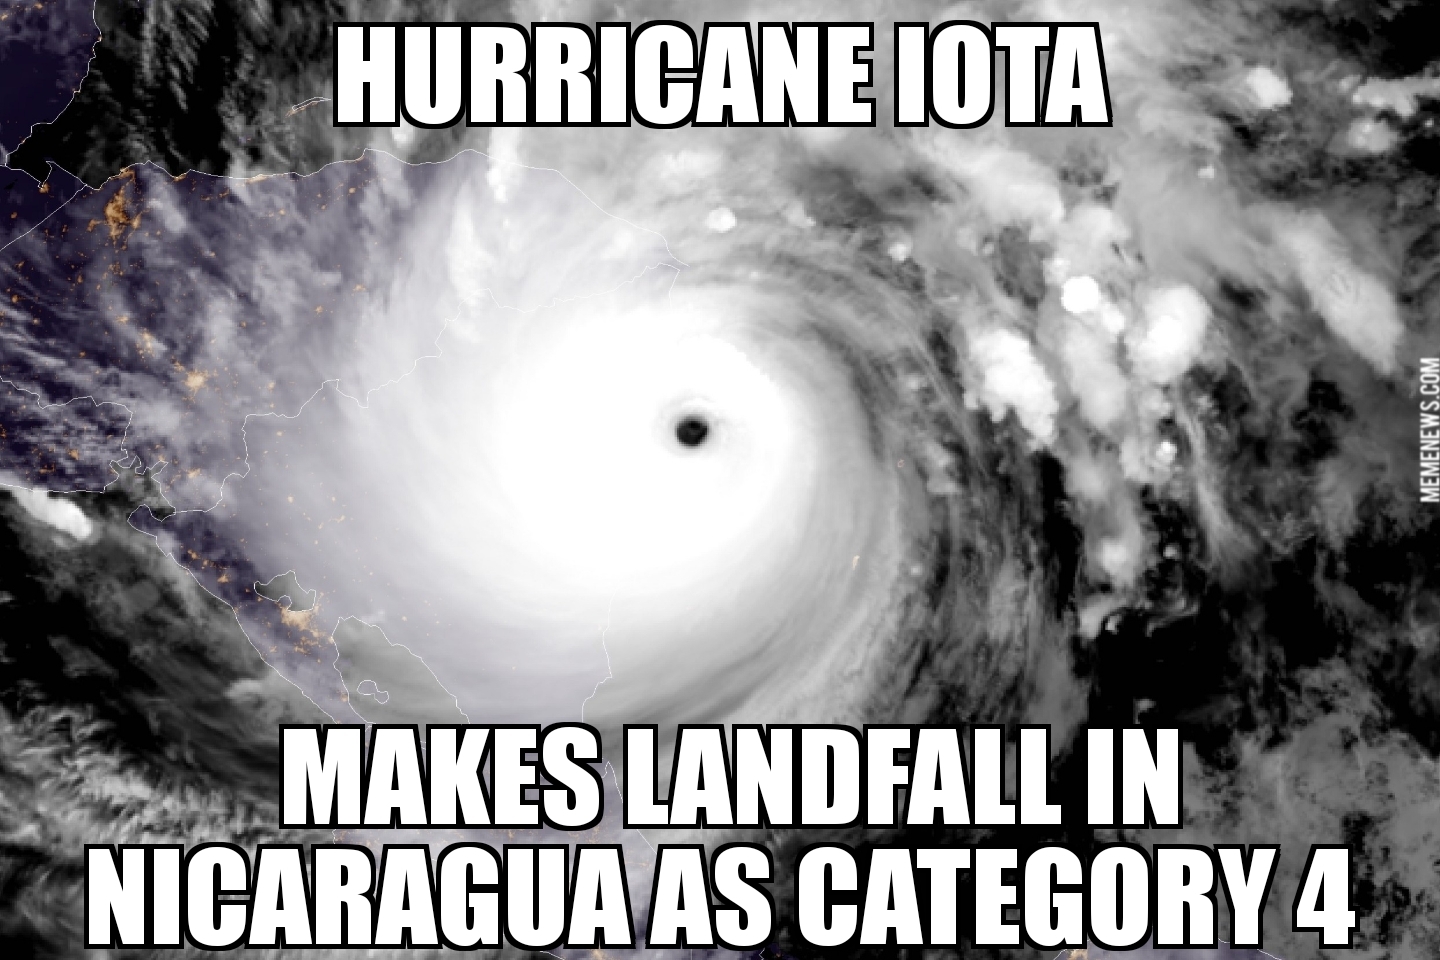 Hurricane Iota makes landfall